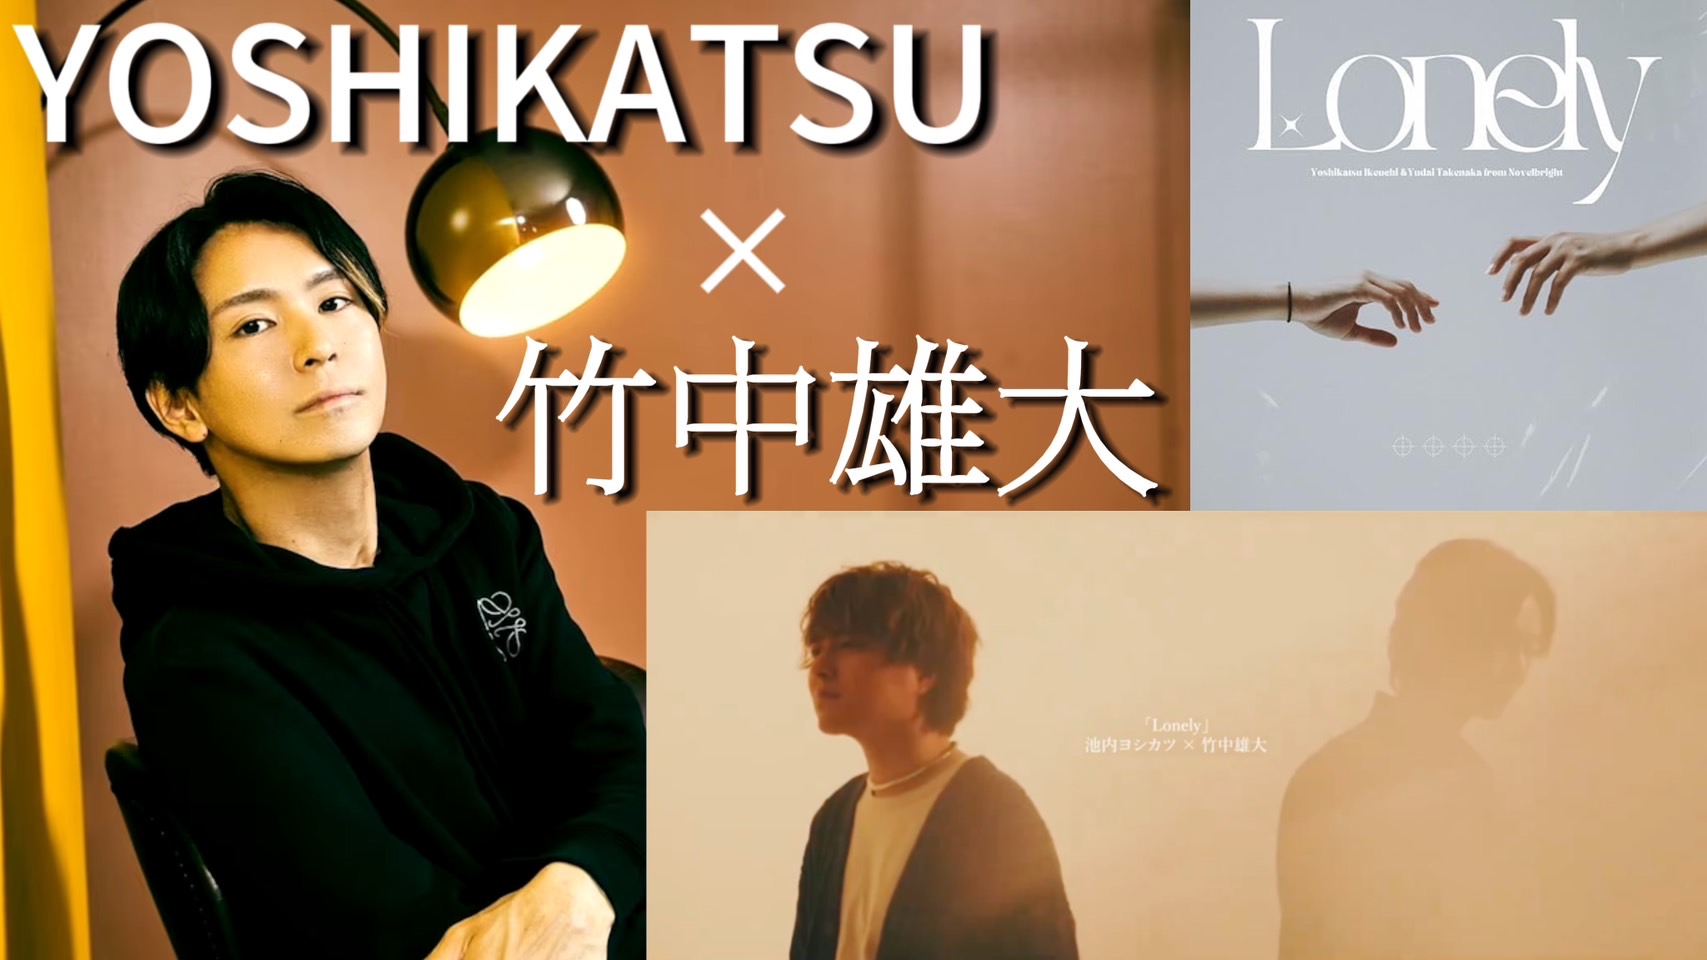 【天才作曲家】YOSHIKATSUのリリース楽曲「Lonely」について、制作の裏側などを公開！